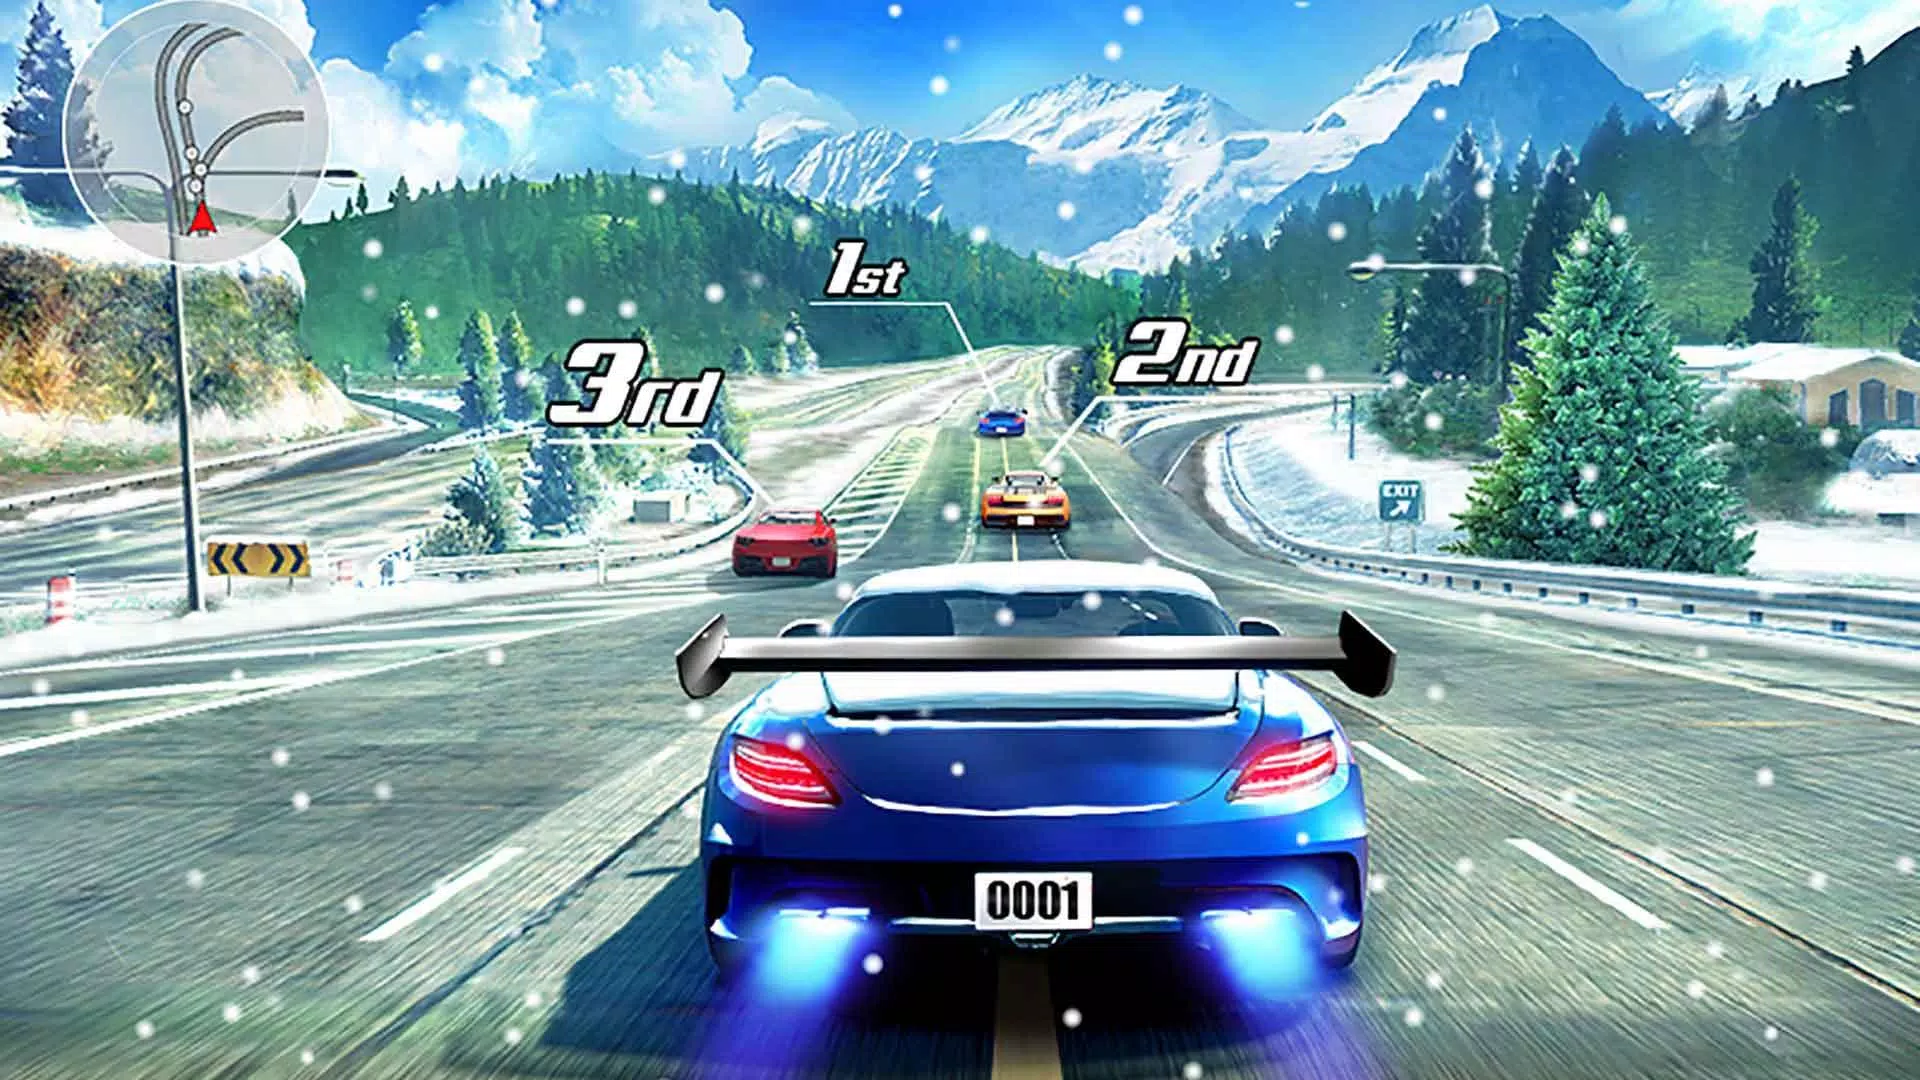 Đua xe đường phố 3D APK là một game đua xe đỉnh cao mà ai cũng muốn trải nghiệm. Với đồ họa 3D chân thật và điều khiển bằng cảm ứng, thật khó để dừng lại khi chơi game hấp dẫn này. Hãy xem các hình ảnh đường phố 3D trong game để nhận thức thêm về sự đa dạng và tuyệt vời của nó.